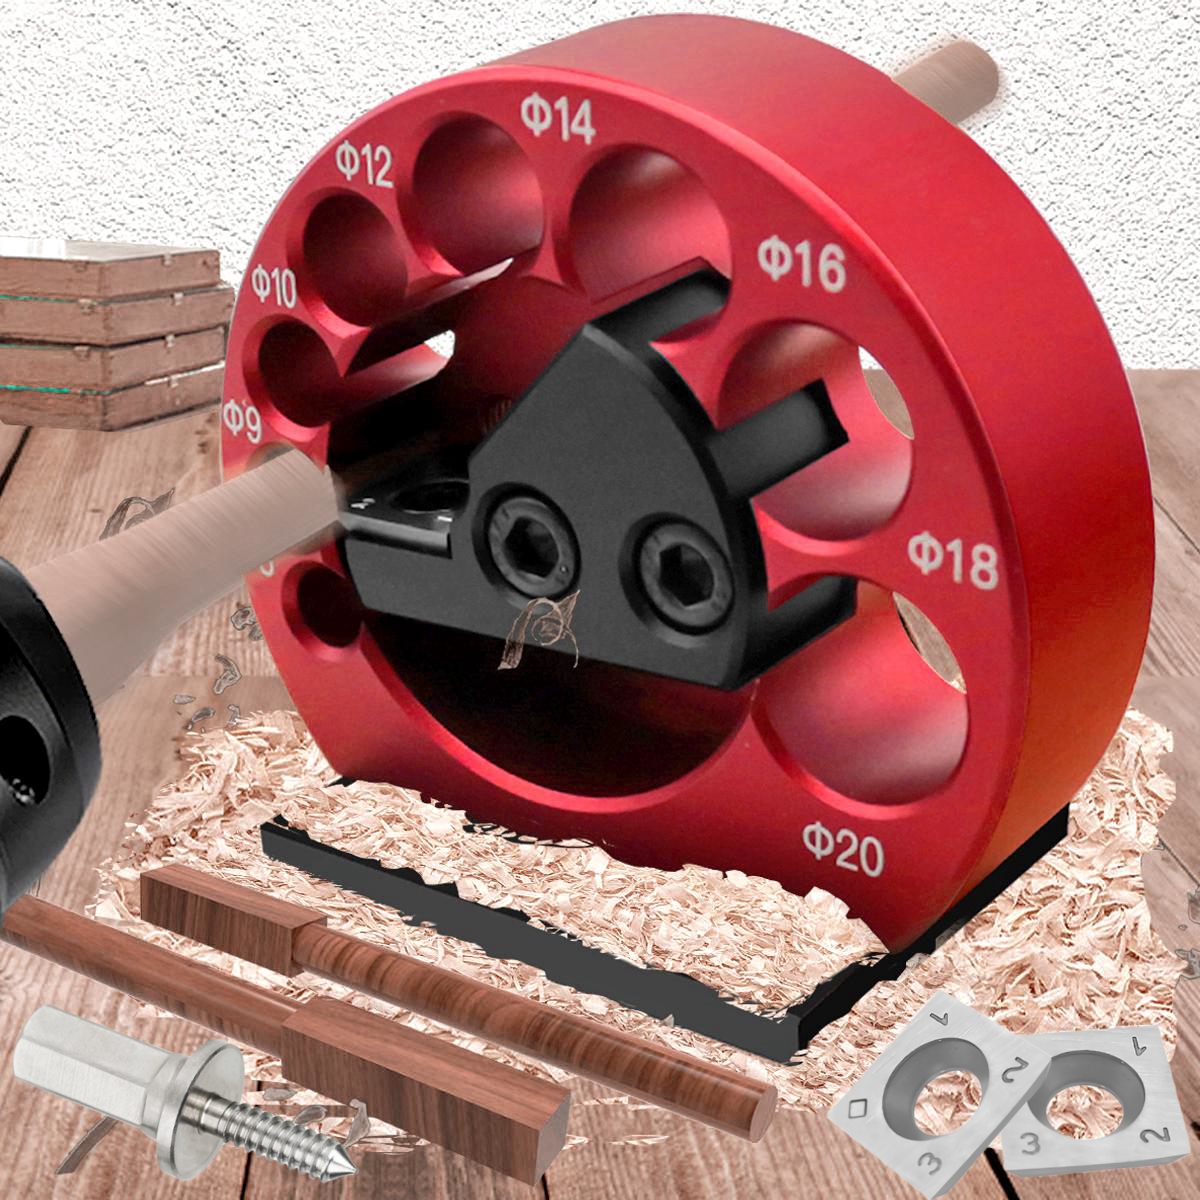 Rod Dowel Maker Jig Wooden Dowel Cutter DIY Tools 3 Holes Carpentry Tools